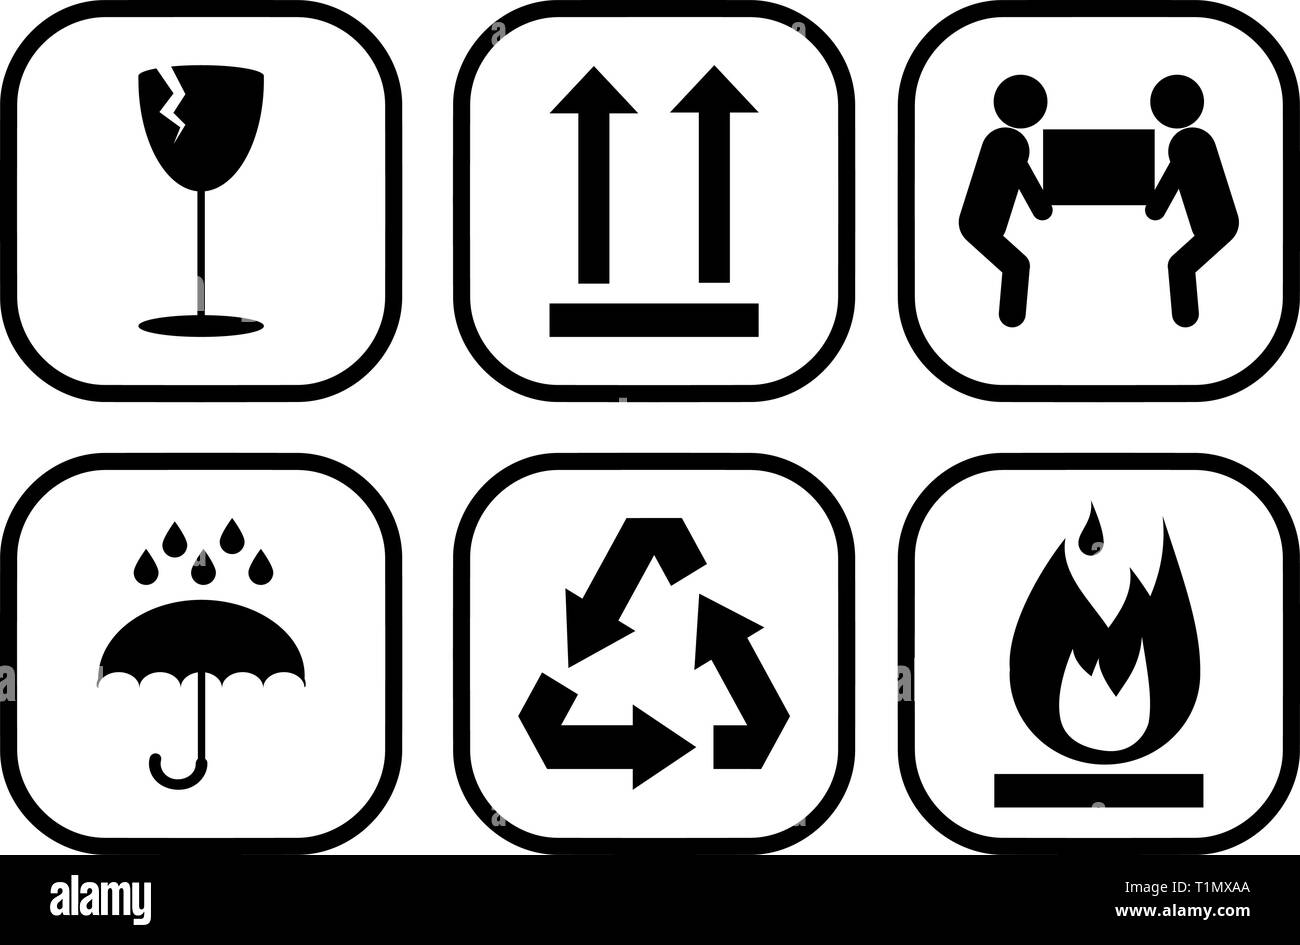 Vecteur de symboles d'emballage inflammable, fragile, lourd, recycler, garder au sec et de ce côté-ci des icônes Illustration de Vecteur